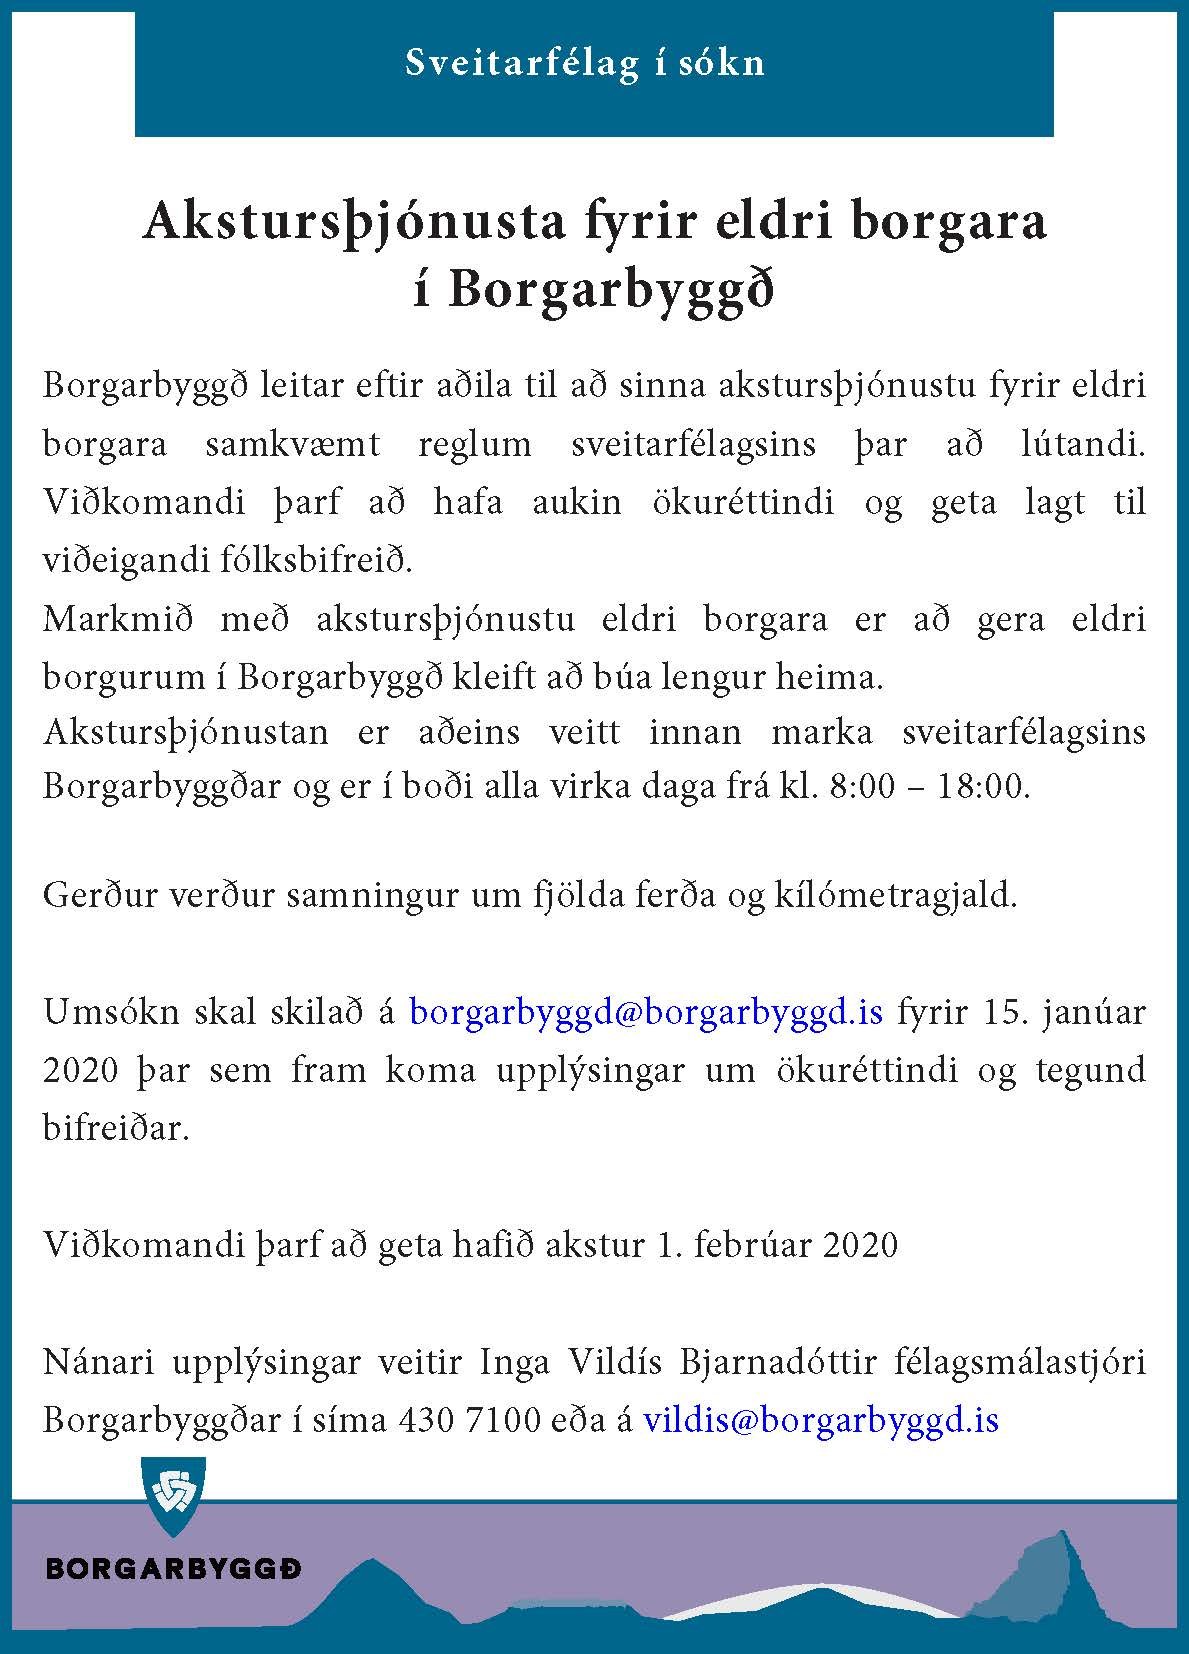 Featured image for “Akstursþjónusta fyrir eldri borgara í Borgarbyggð”